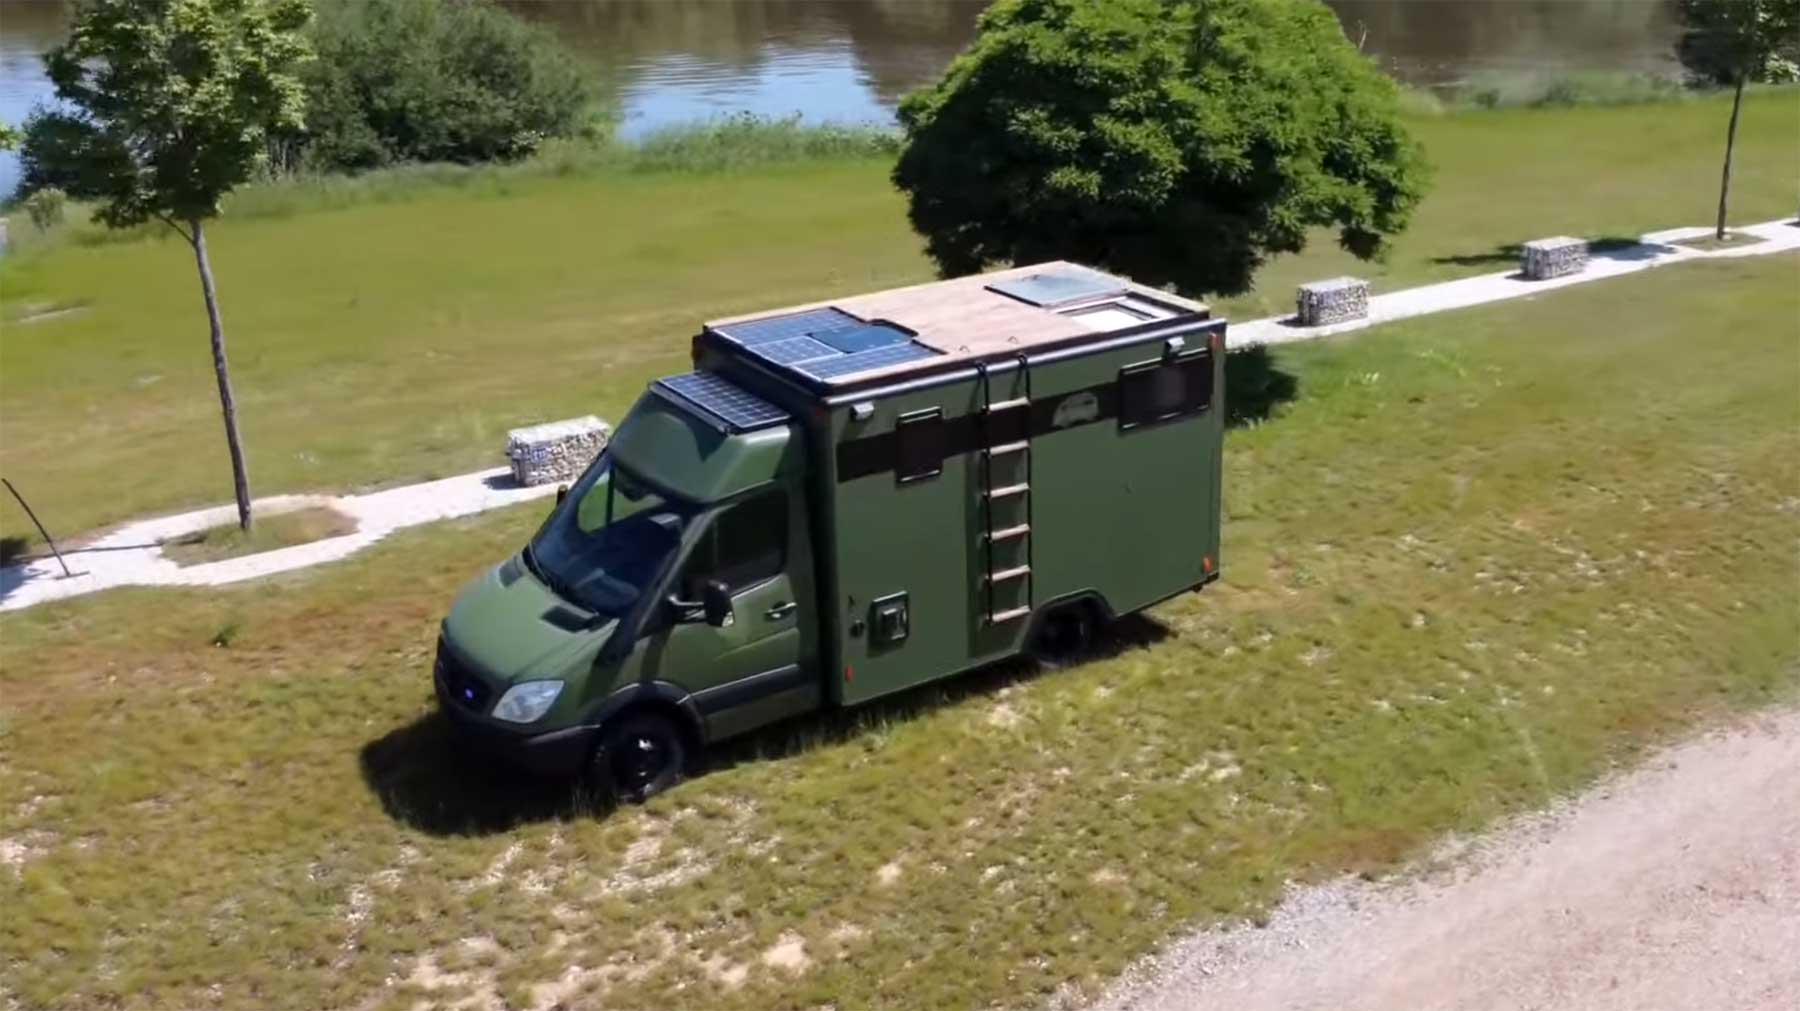 Alten Krankenwagen zum Campingbus umgebaut Campingwagen-aus-altem-Krankenwagen-gebaut 